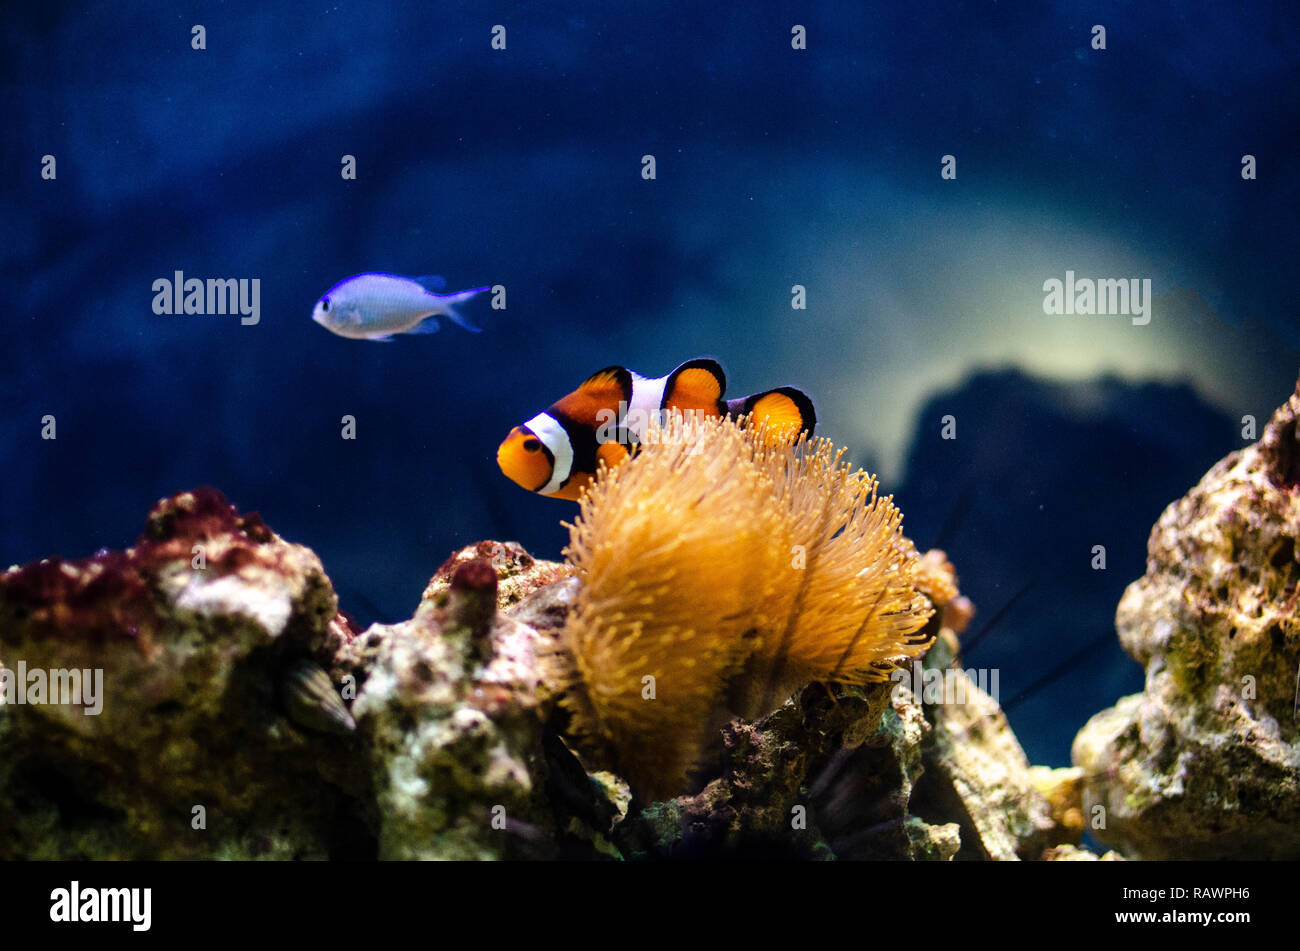 Bunte Clownfische in einer Anemone an einem tropischen Korallenriff mit blauem Hintergrund und Felsen. Sea Life und das Meer. Stockfoto